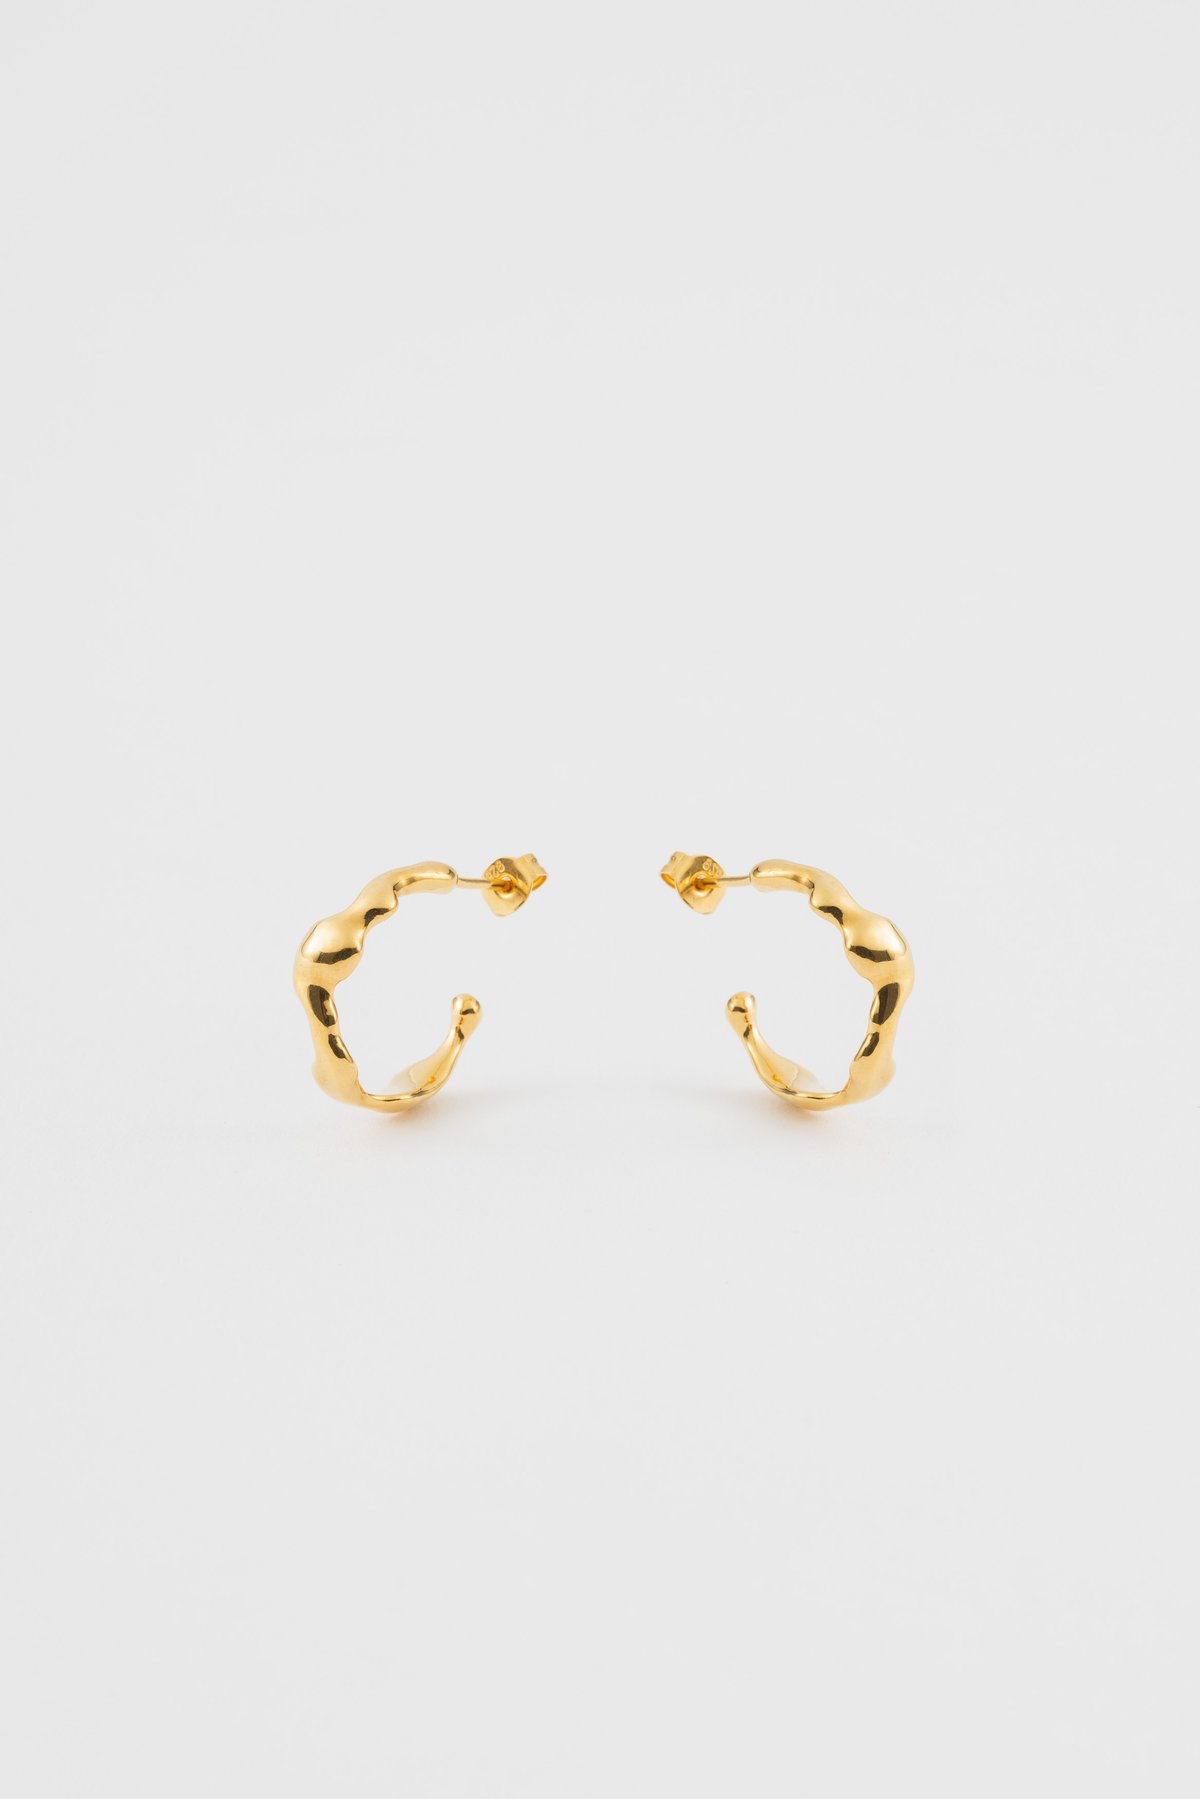 Image of ripple earrings